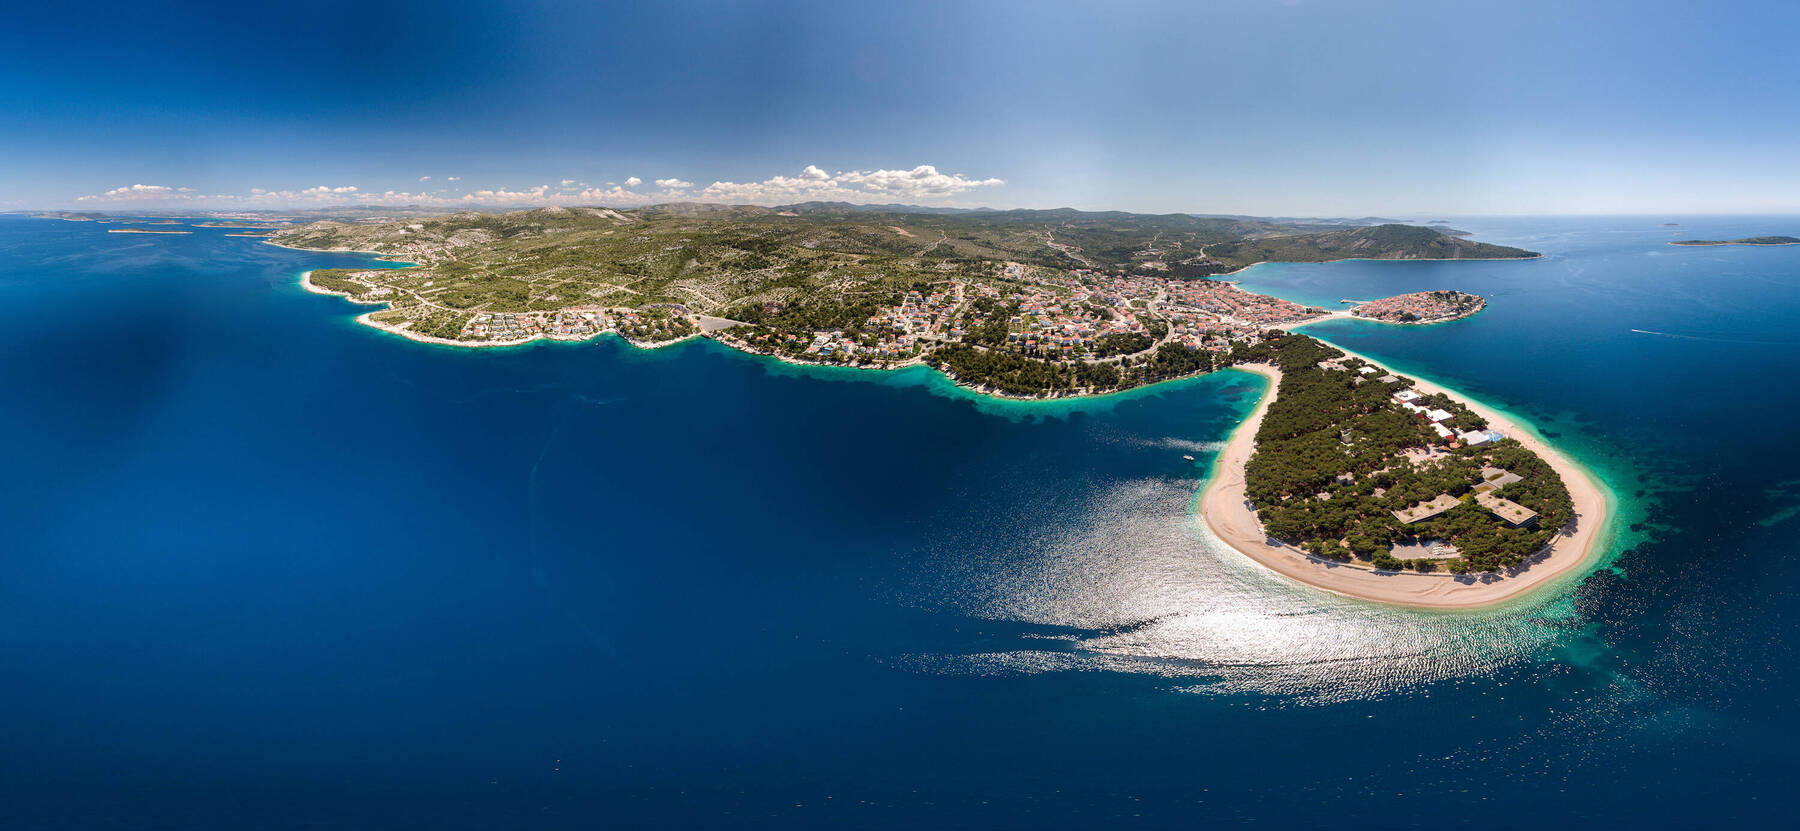 Take the scenic route down Croatia's coast